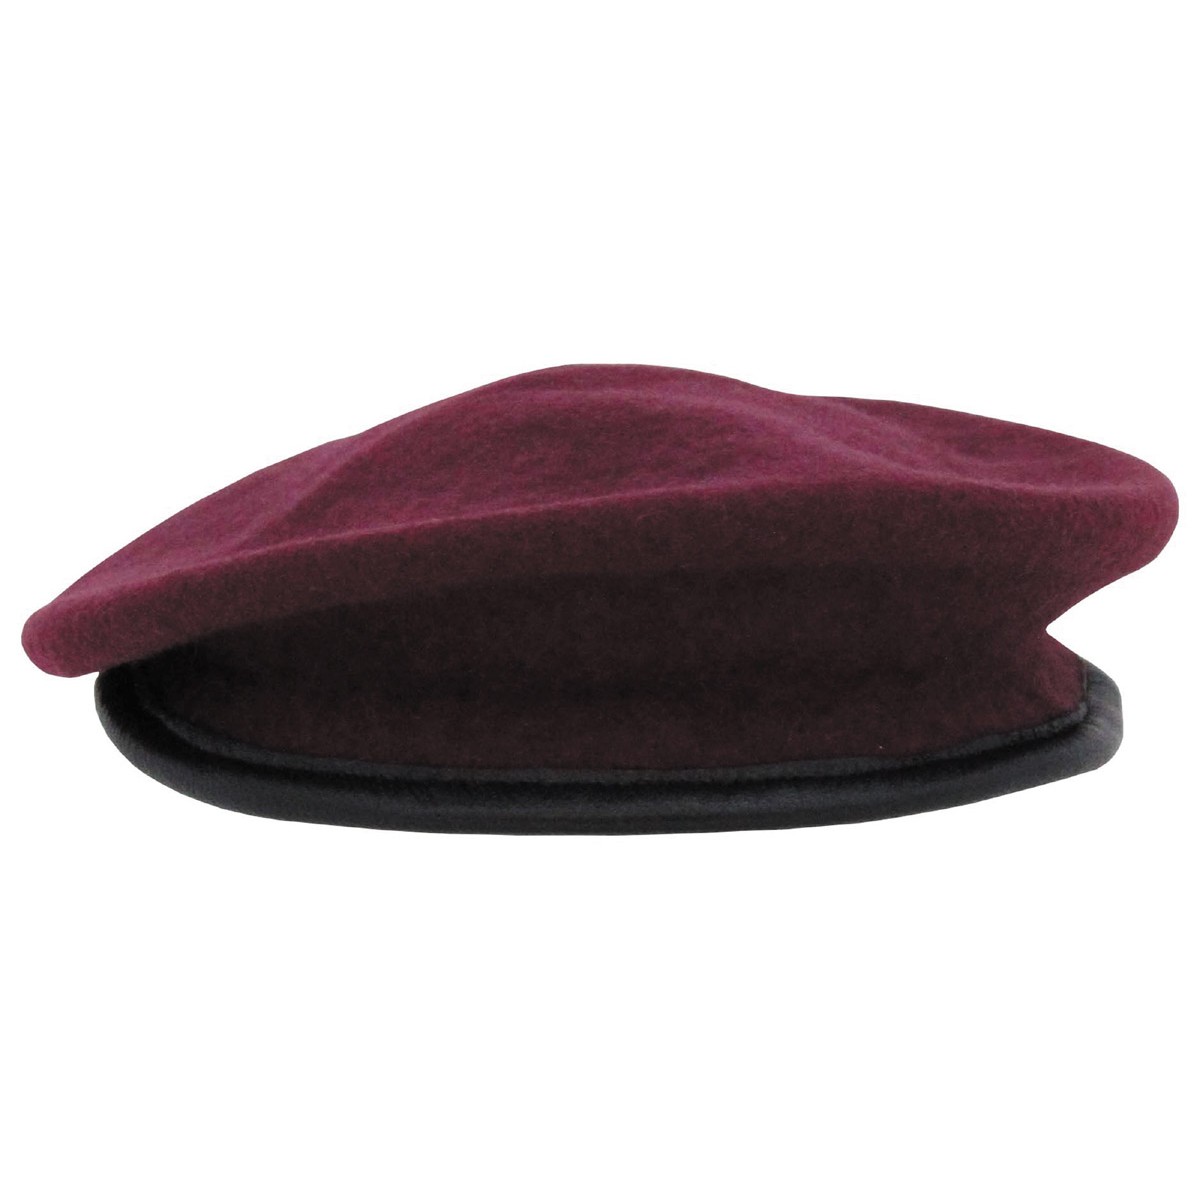 US RANGER KHAKI TAN Army Uniform Military BERET BARETT cap Mütze 